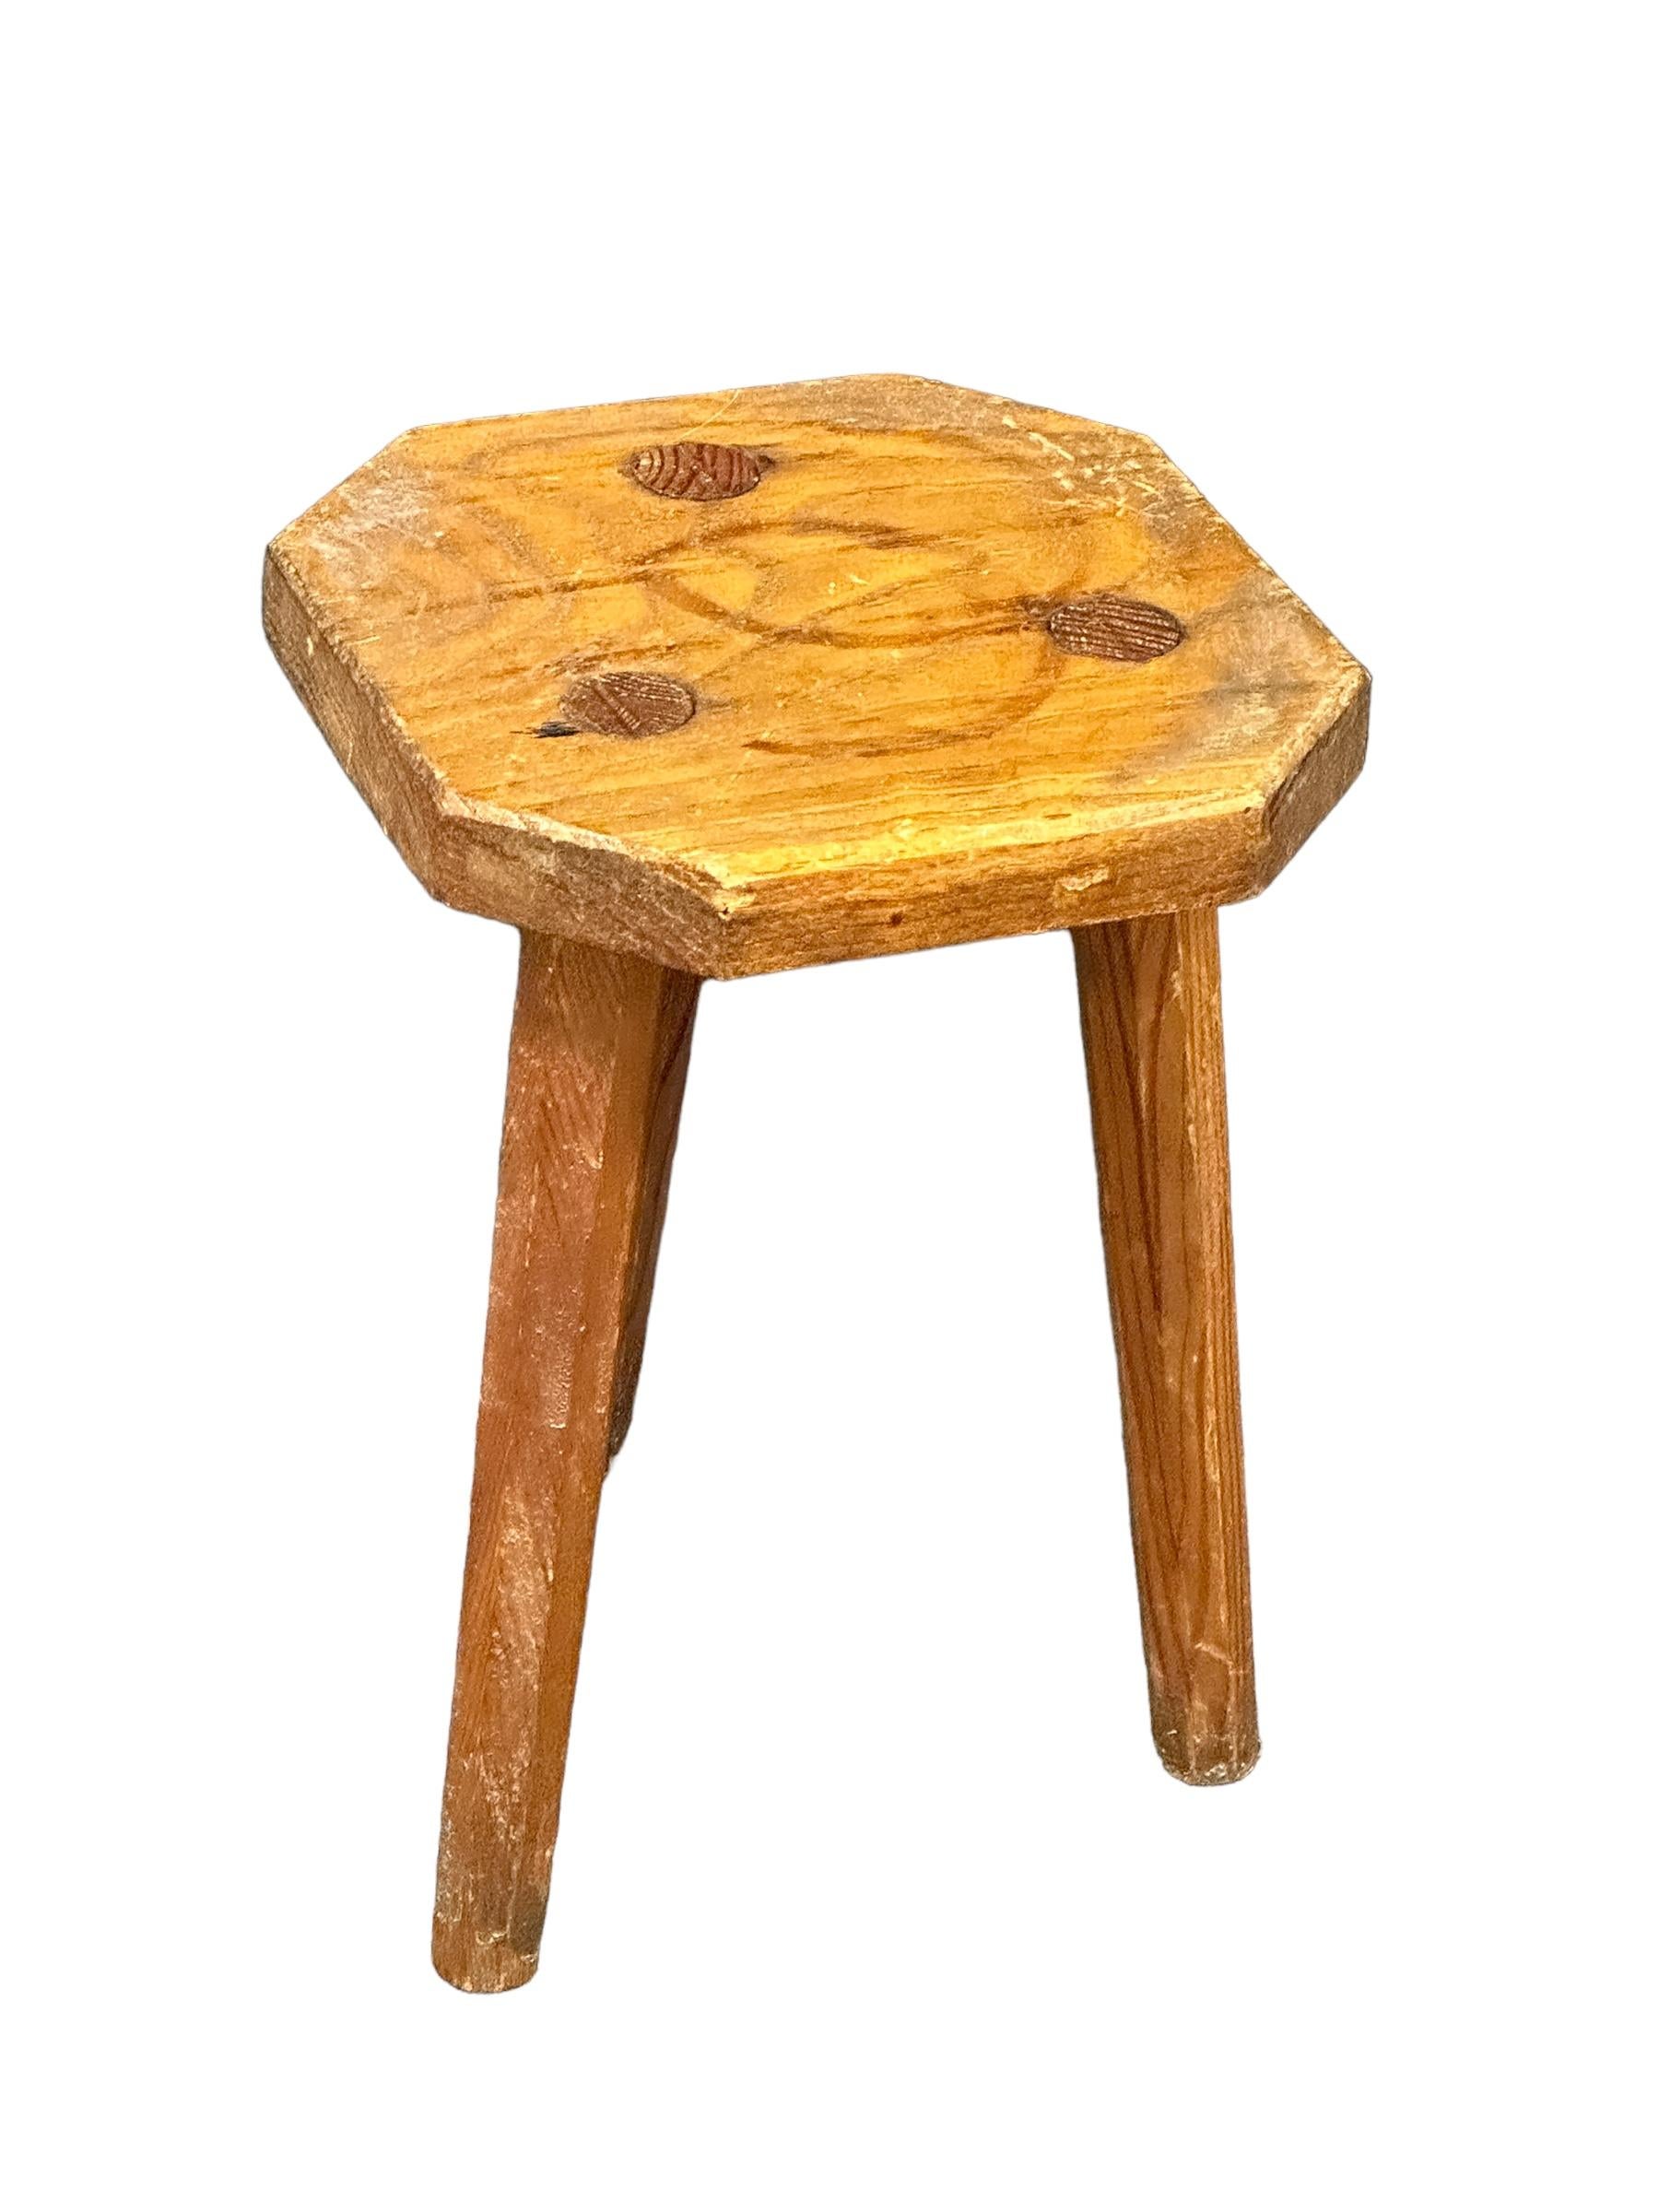 Ce tabouret d'atelier à trois pieds wabi sabi du début du 20e siècle, originaire d'Italie, est un excellent exemple de ce style. La pièce est dotée d'une assise octogonale en bois d'aspect rustique et repose sur trois pieds. Le tabouret présente un